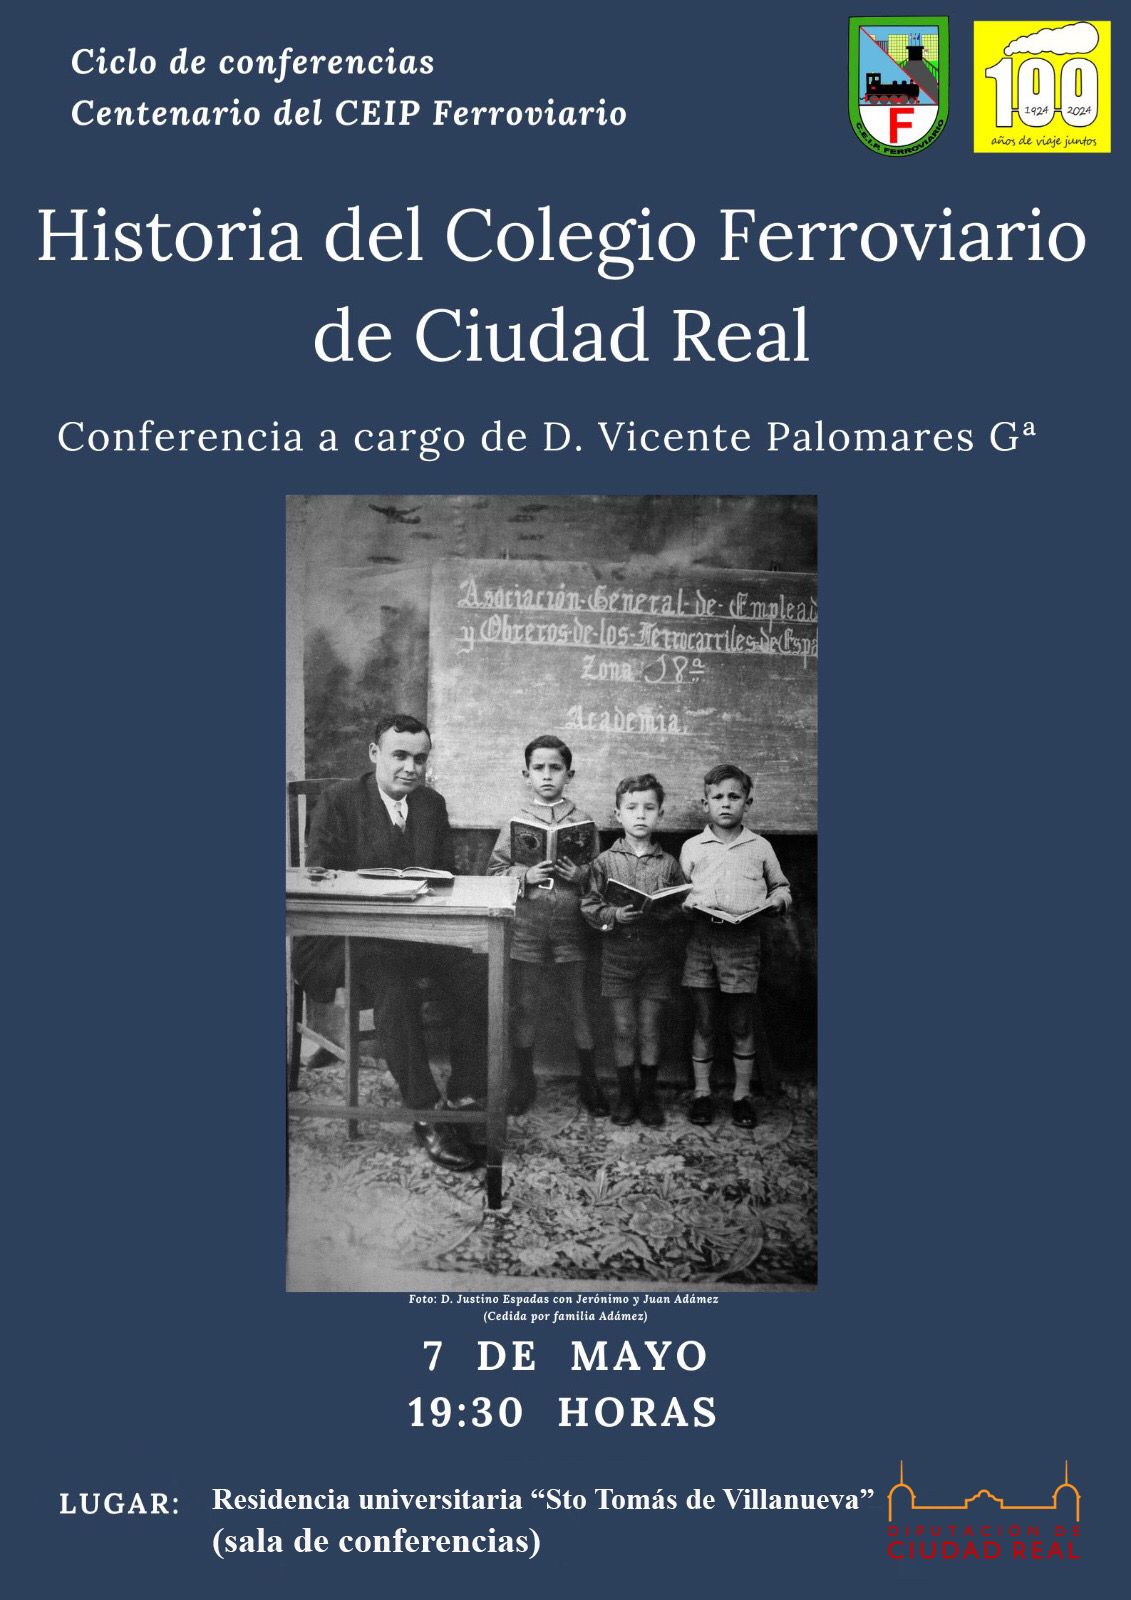 Conferencia sobre la historia del Colegio Ferroviario de Ciudad Real